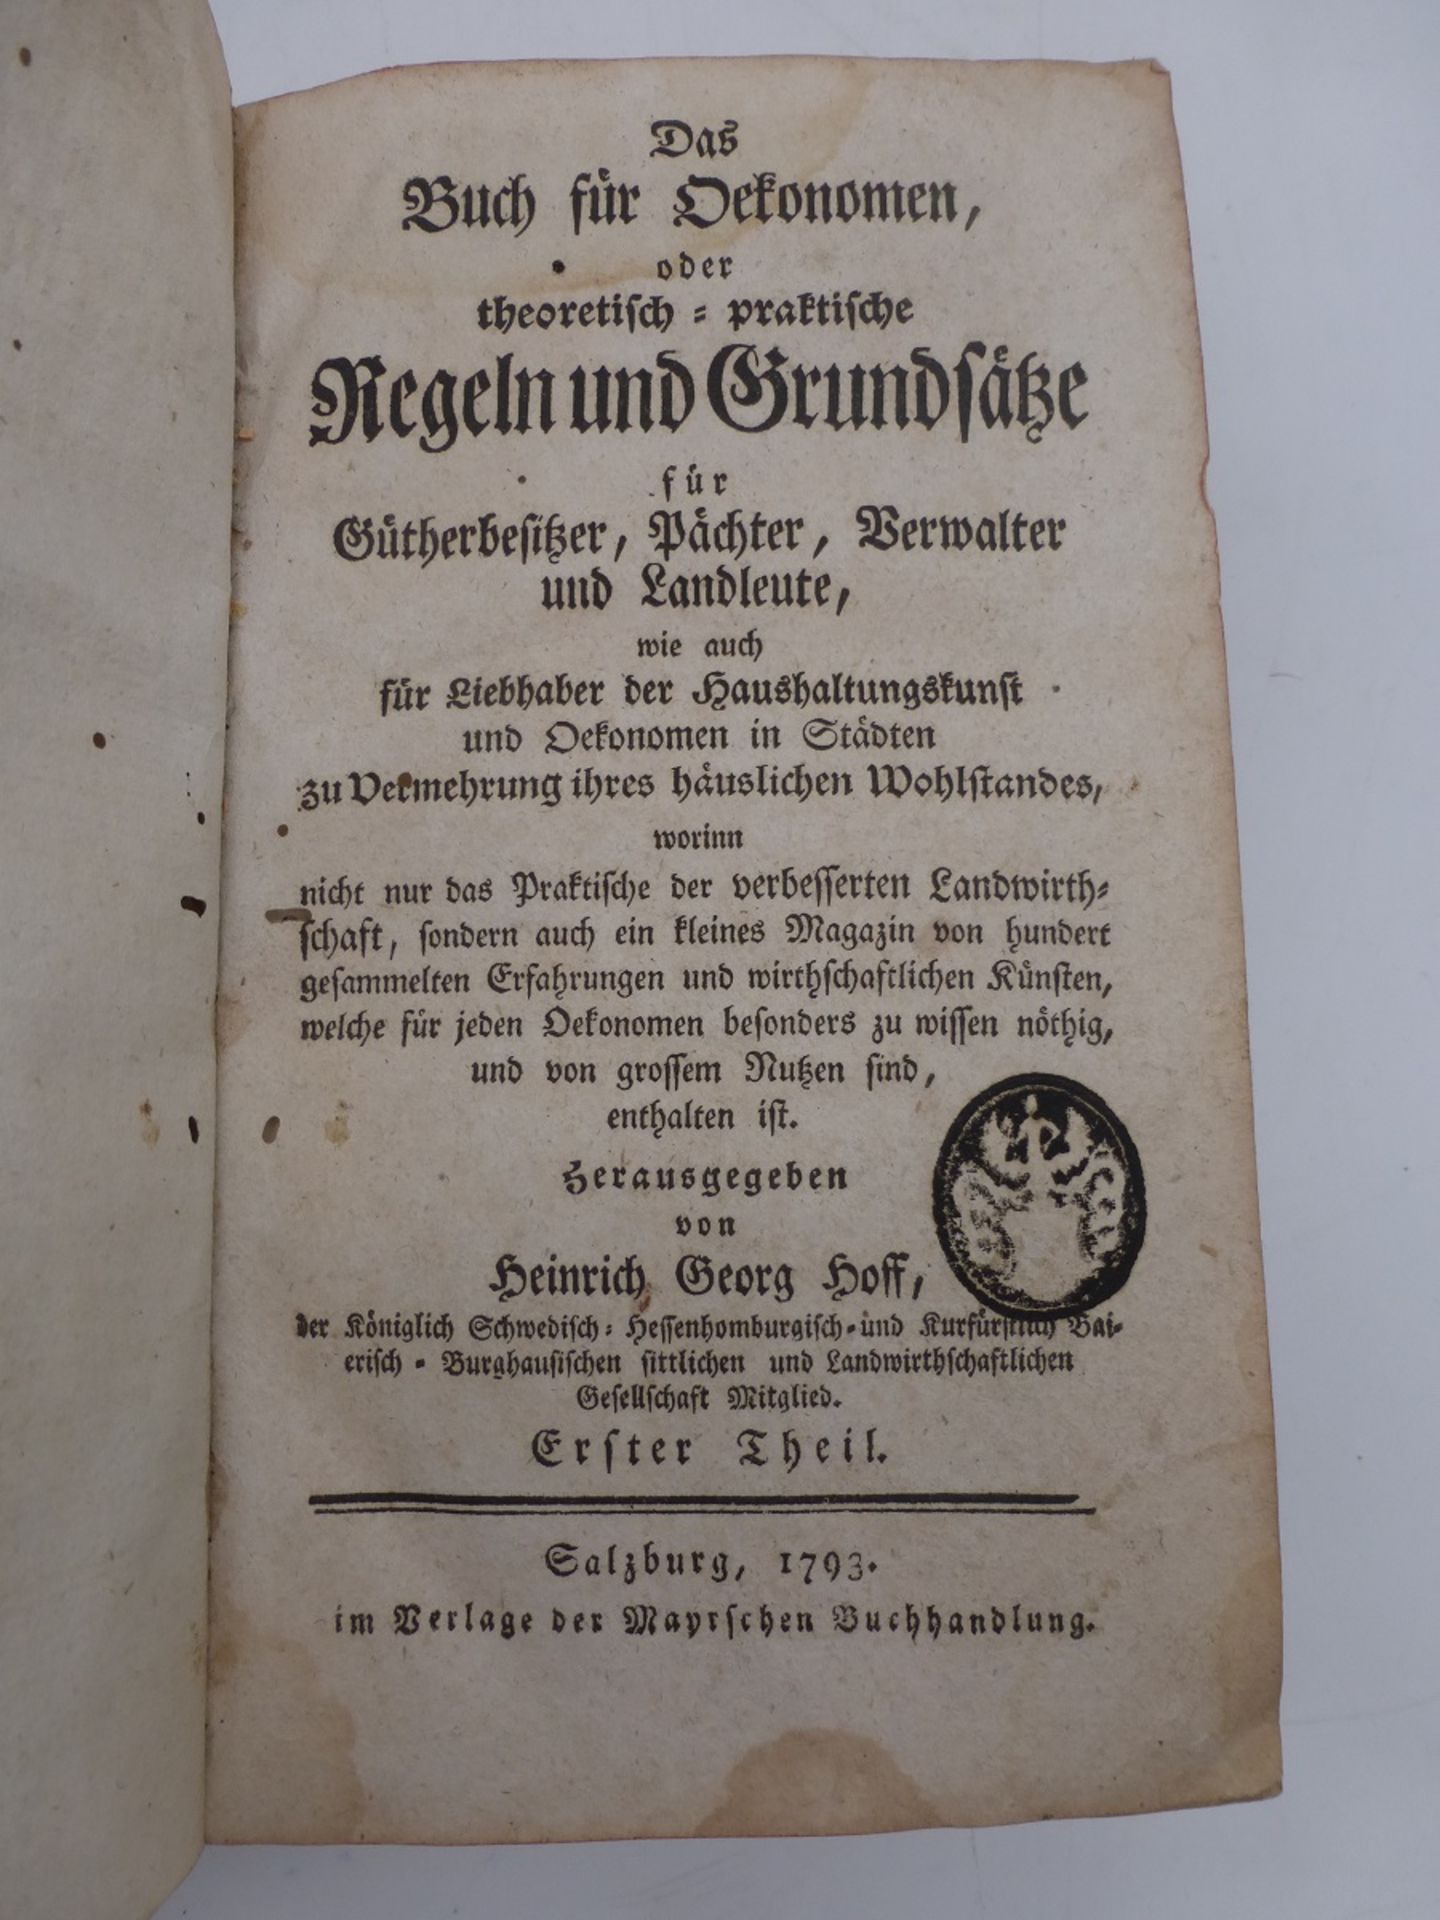 Das Oekonomen Buch / Salzburg 1793 - Bild 2 aus 2